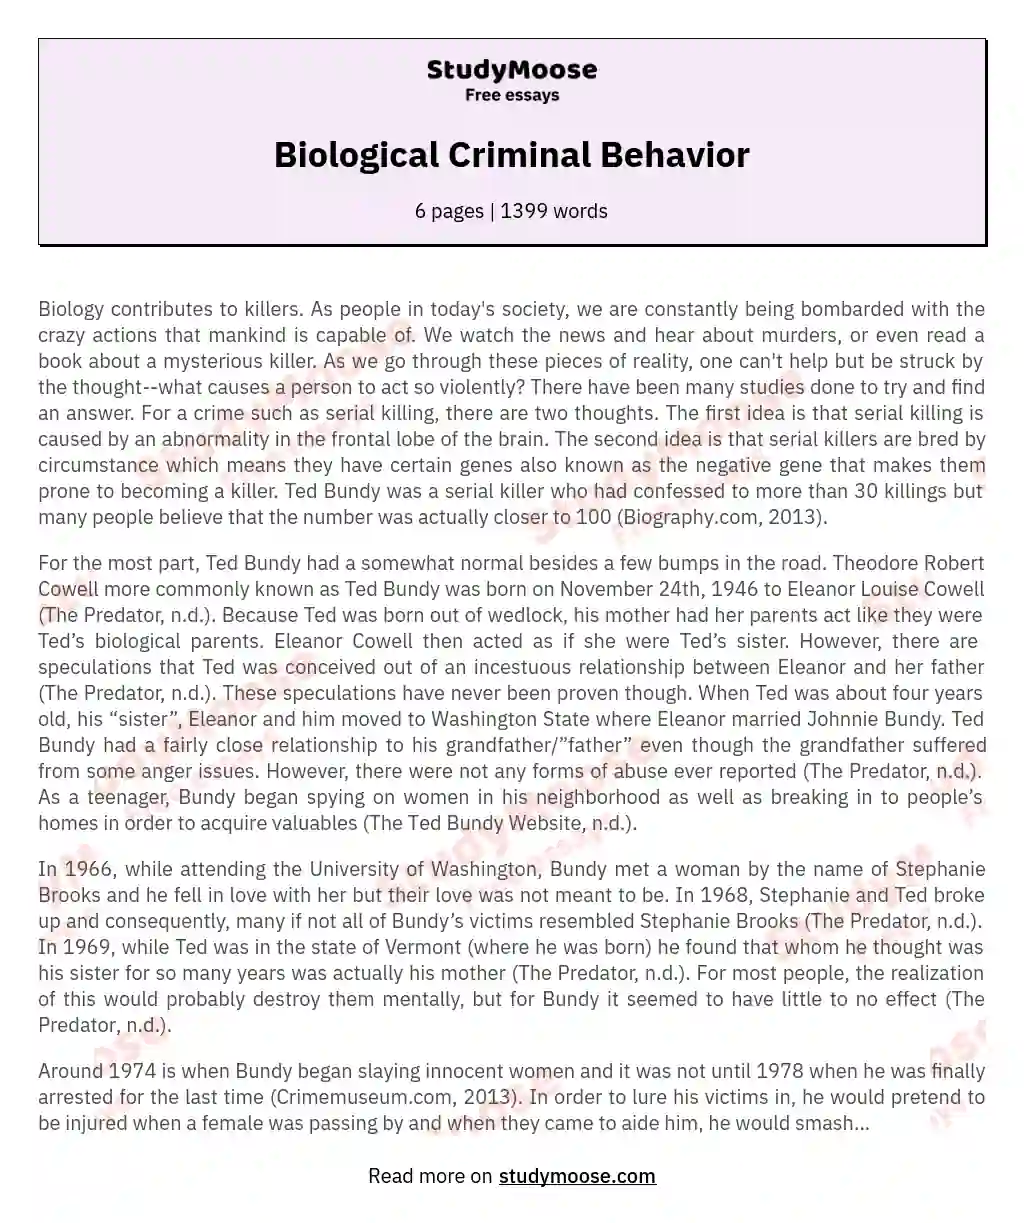 Biological Criminal Behavior essay